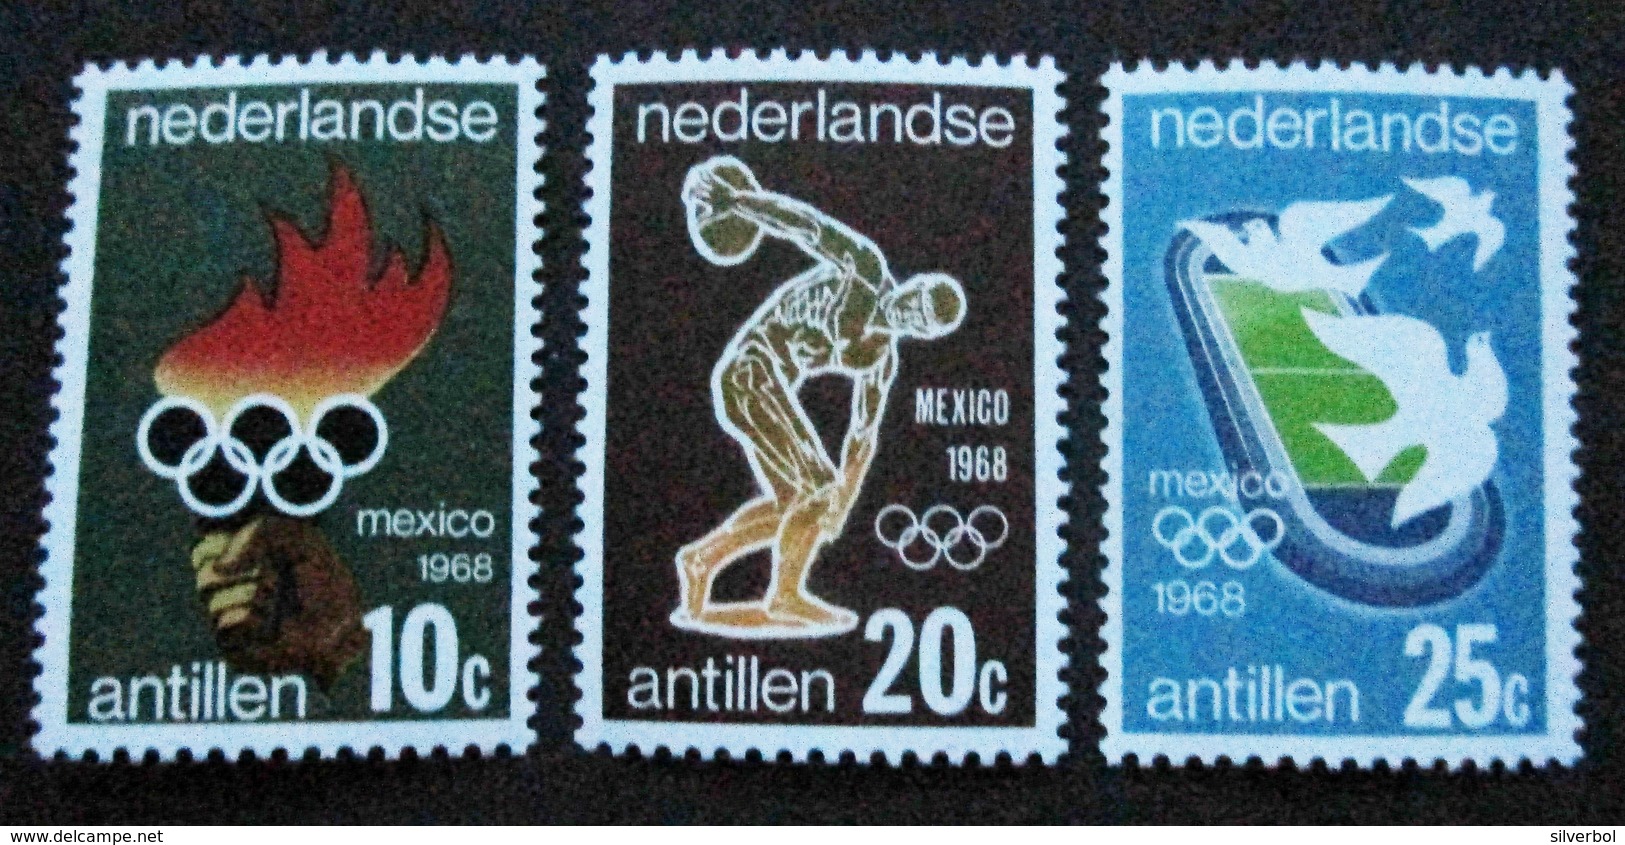 B1516 - Nederlandse Antillen - 1968 - Sc. 313-325 - MNH - Niederländische Antillen, Curaçao, Aruba